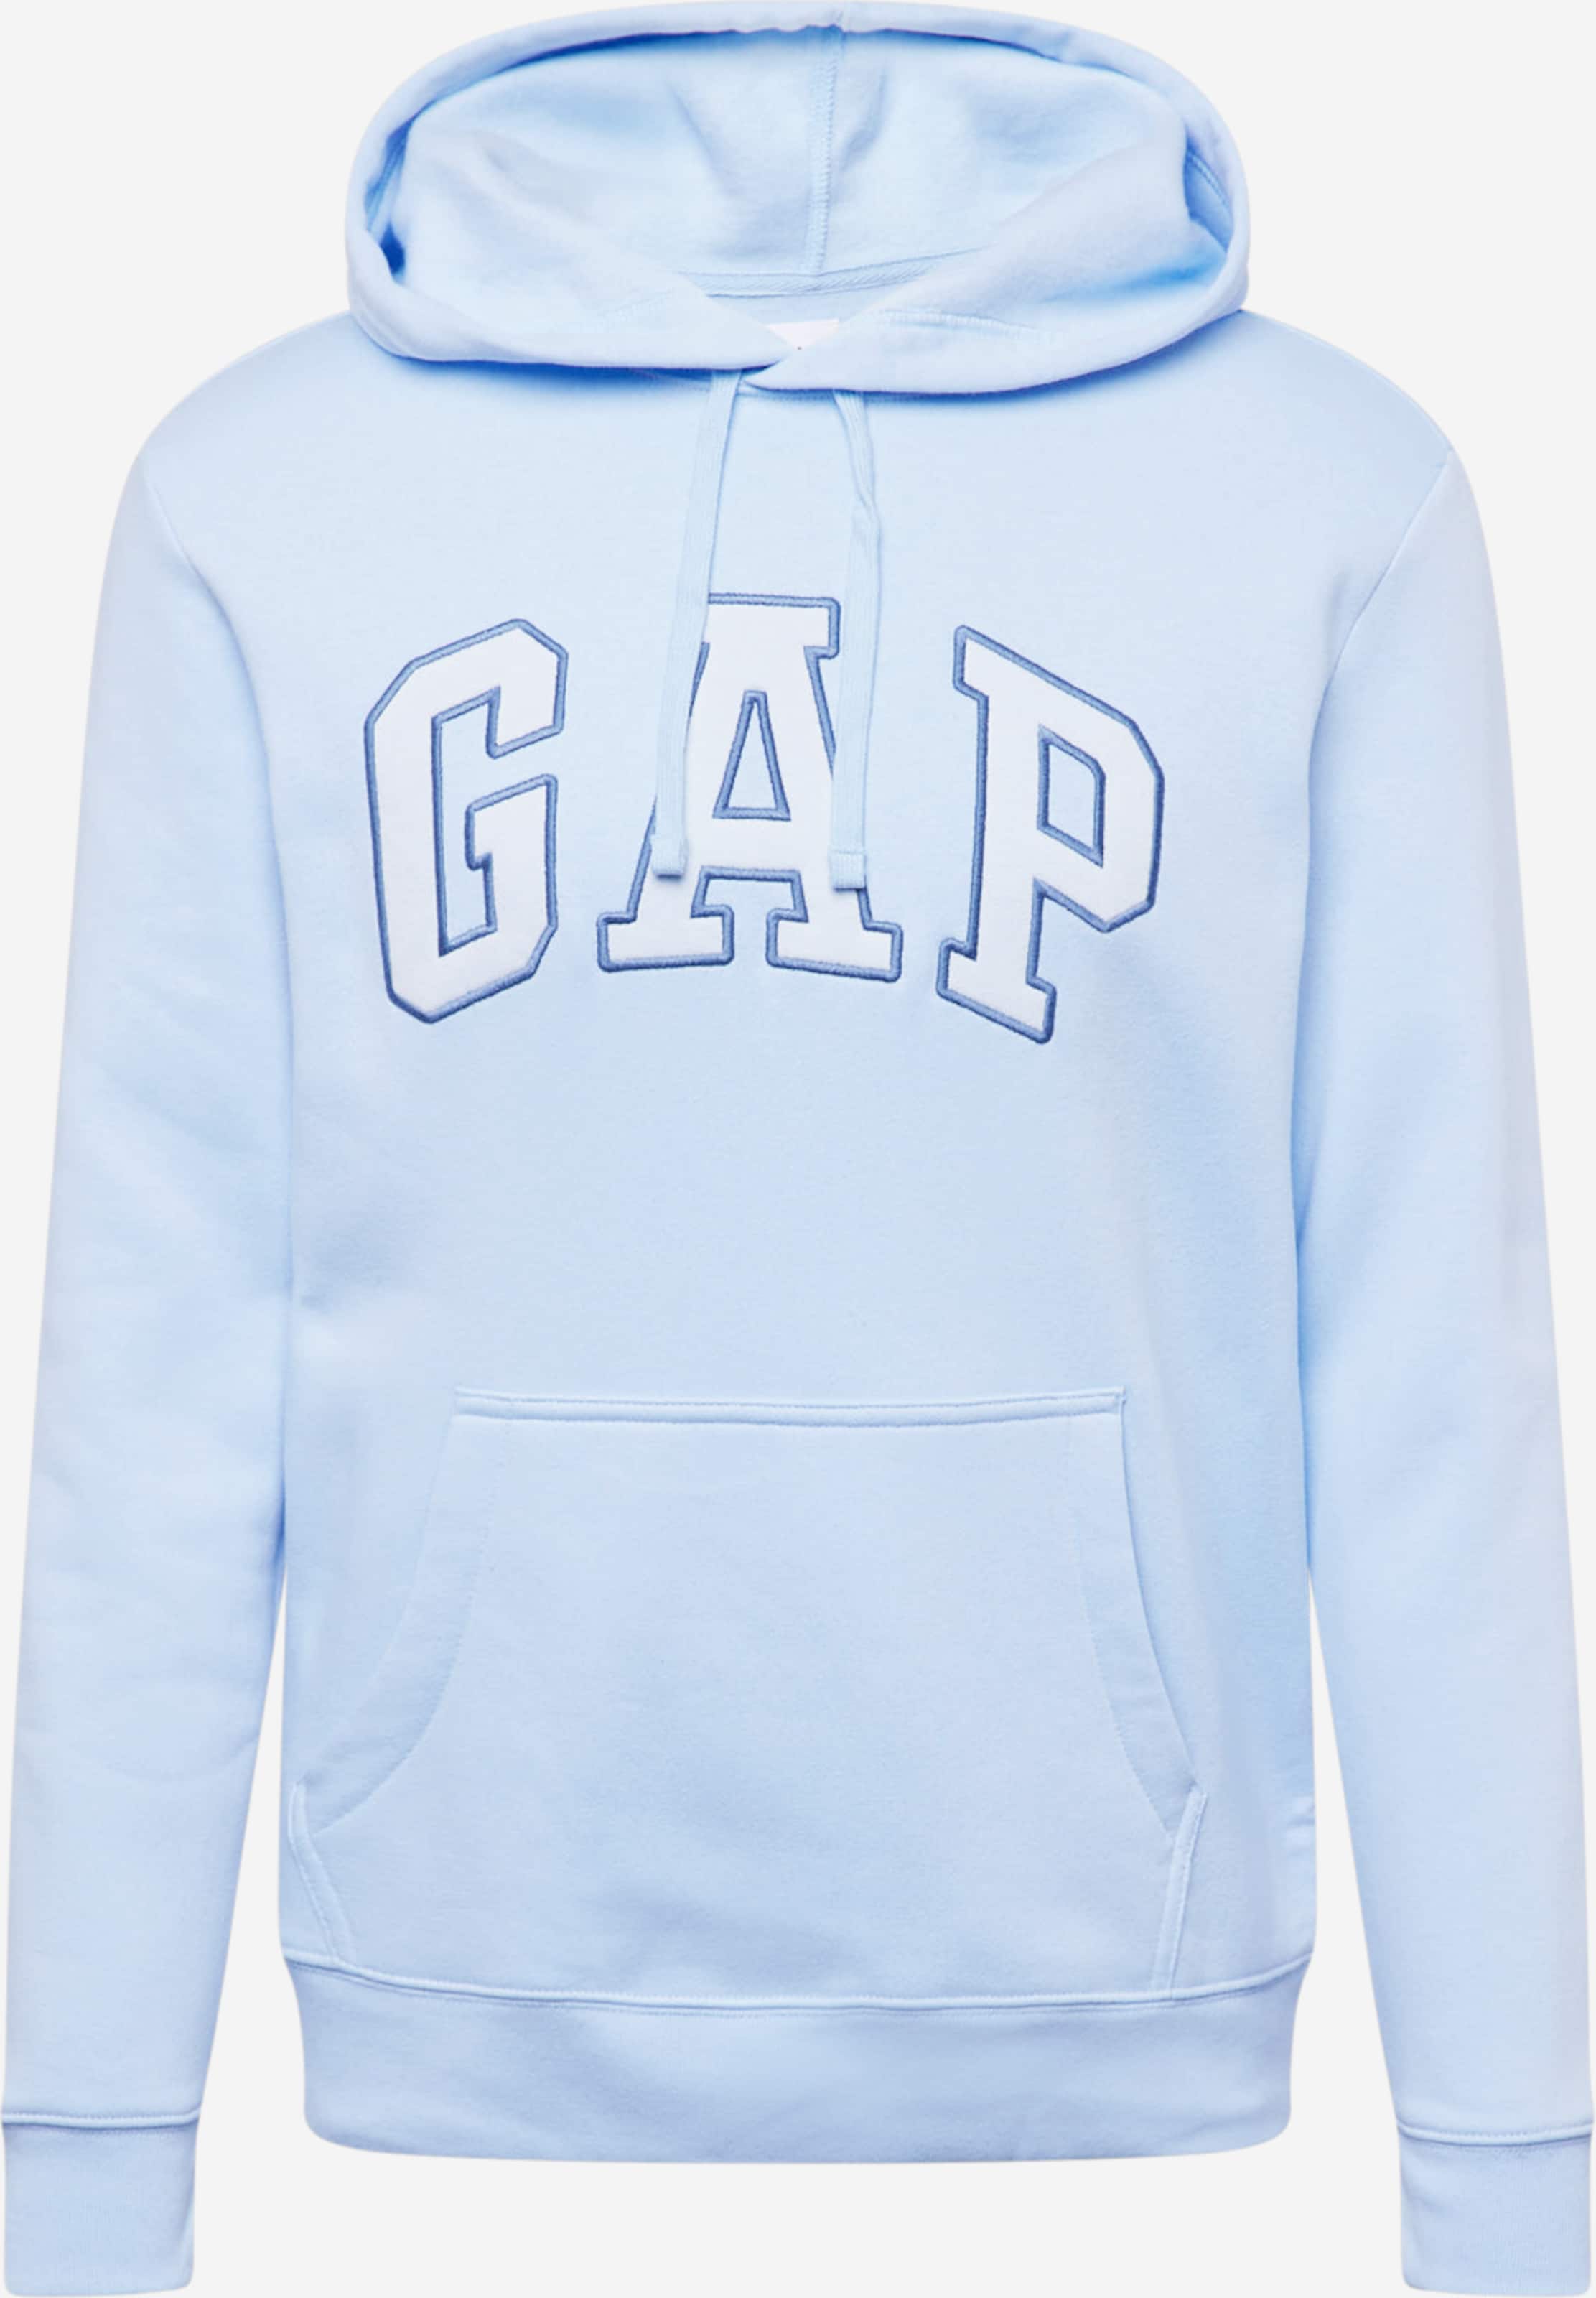 gap hoodie homme